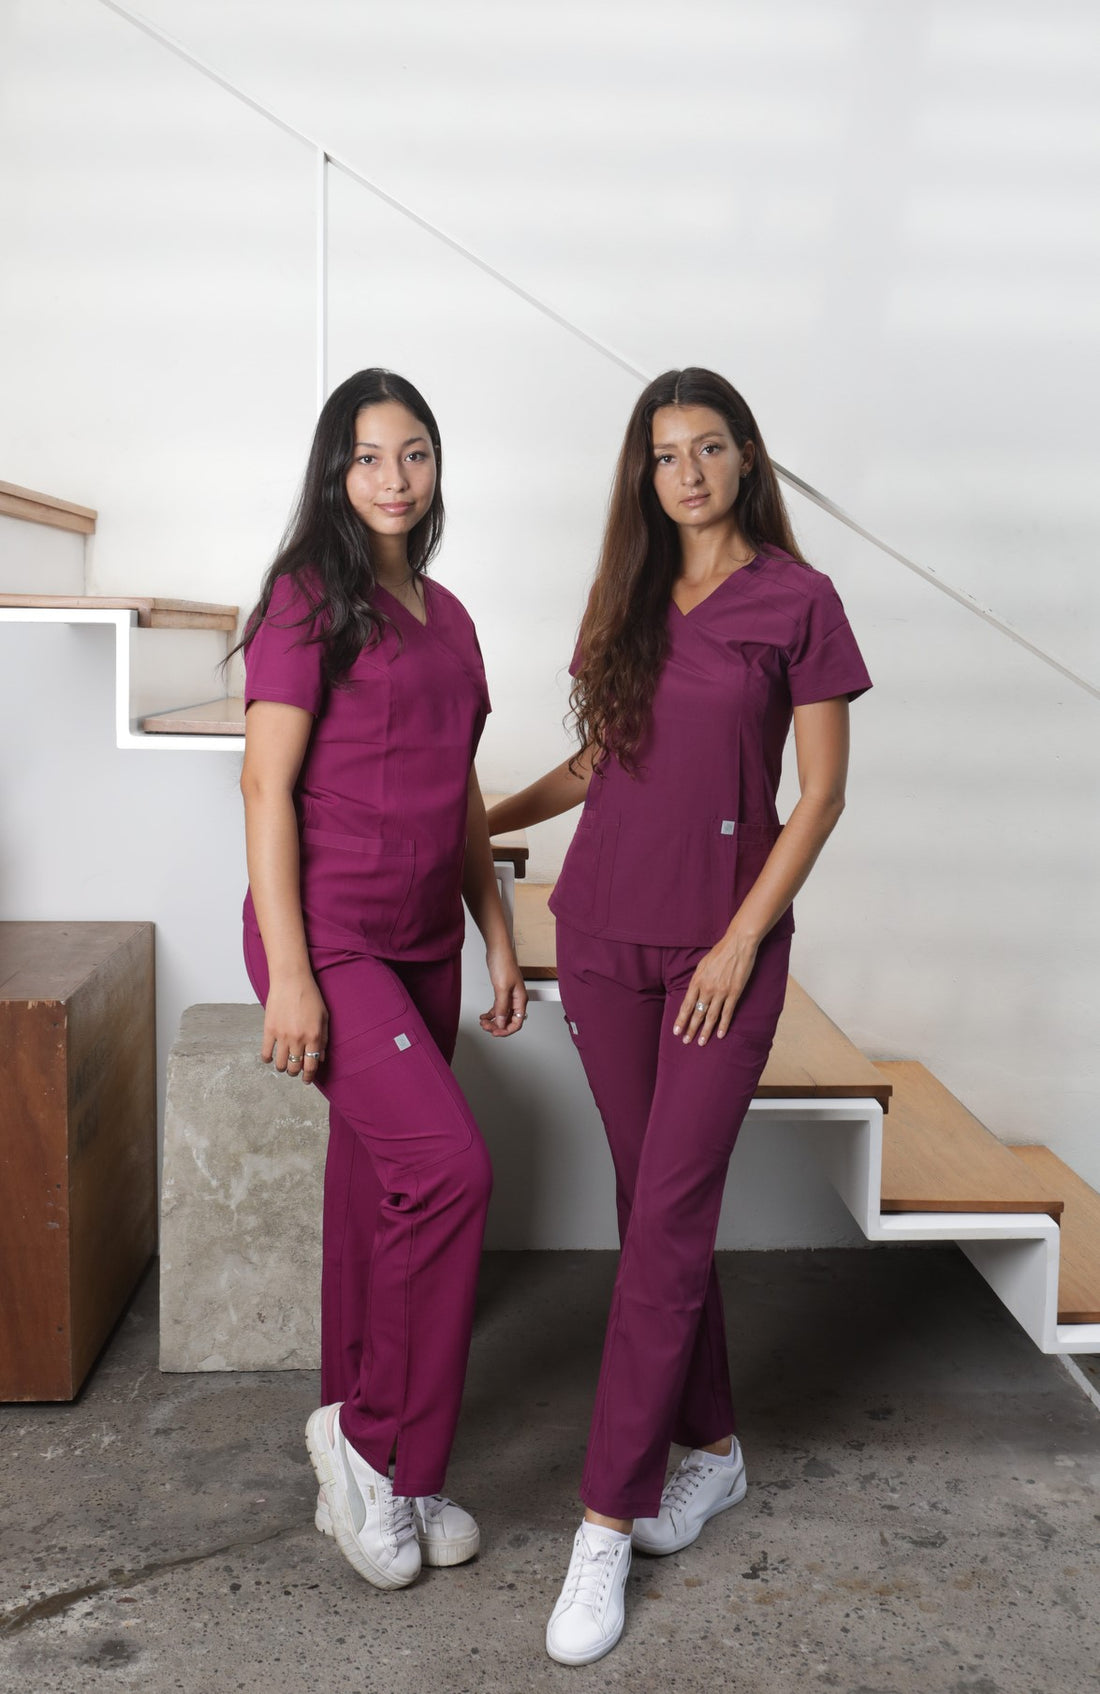 las-nuevas-tendencias-en-uniformes-clinicos-mujer